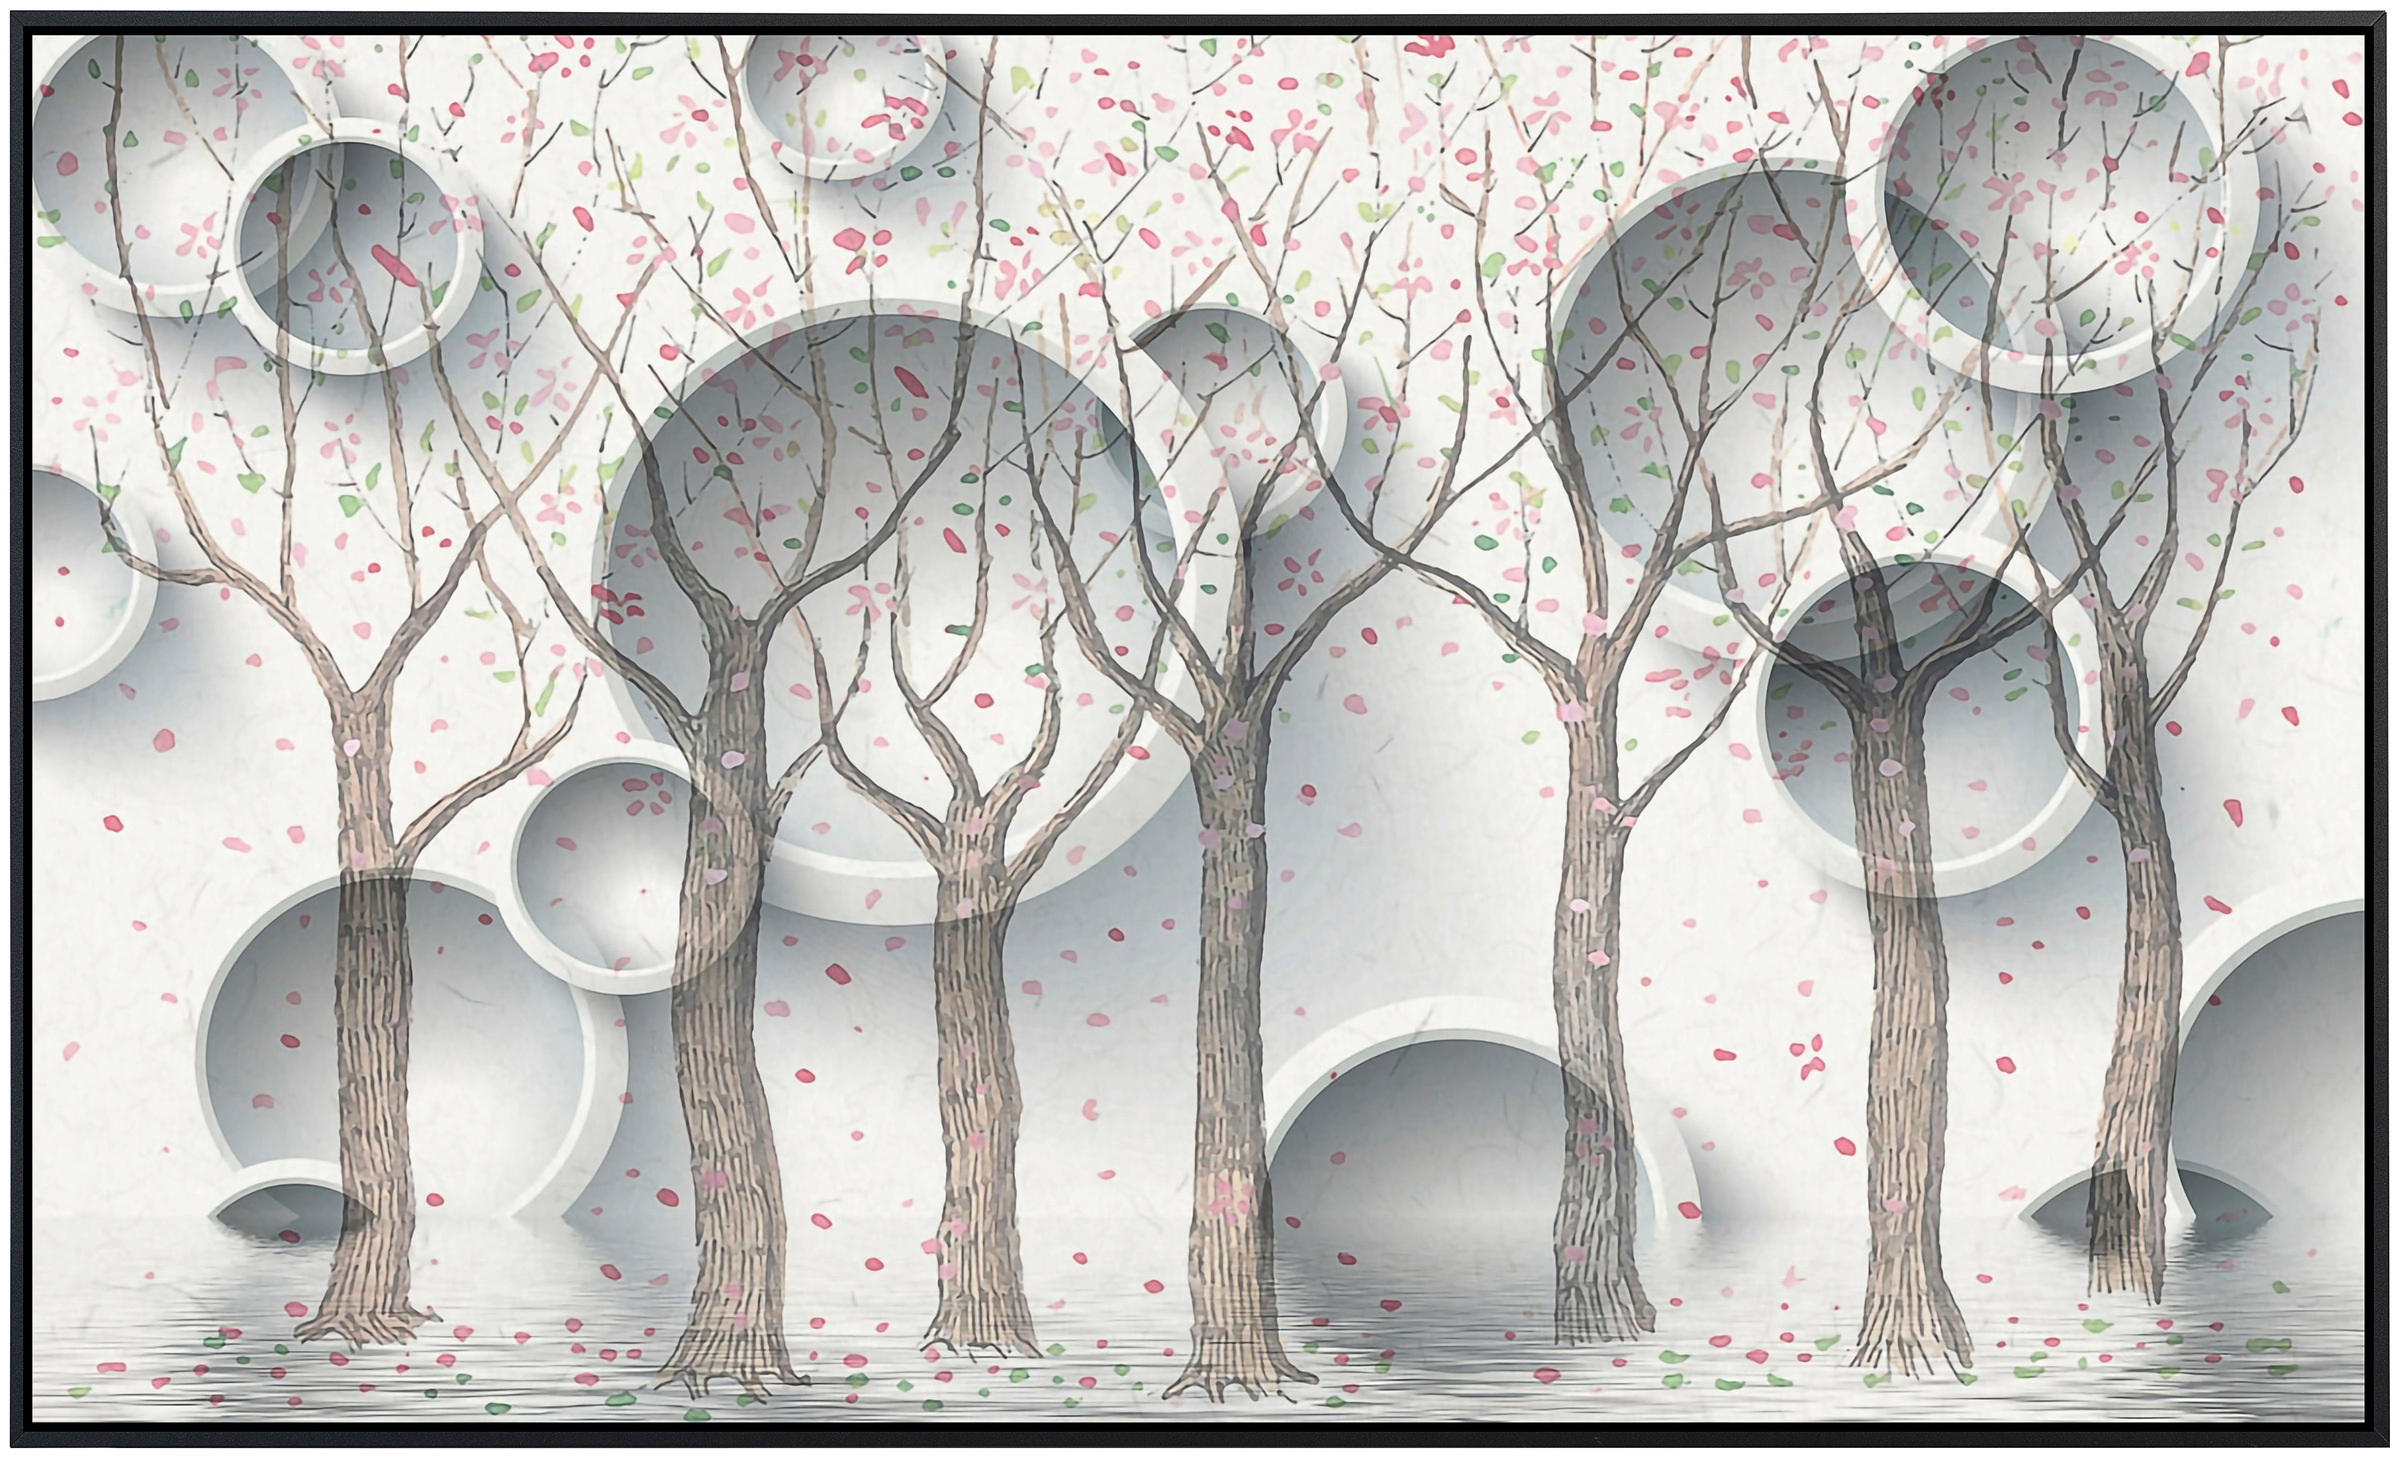 Papermoon Infrarotheizung »Muster mit Bäumen«, sehr angenehme Strahlungswärme